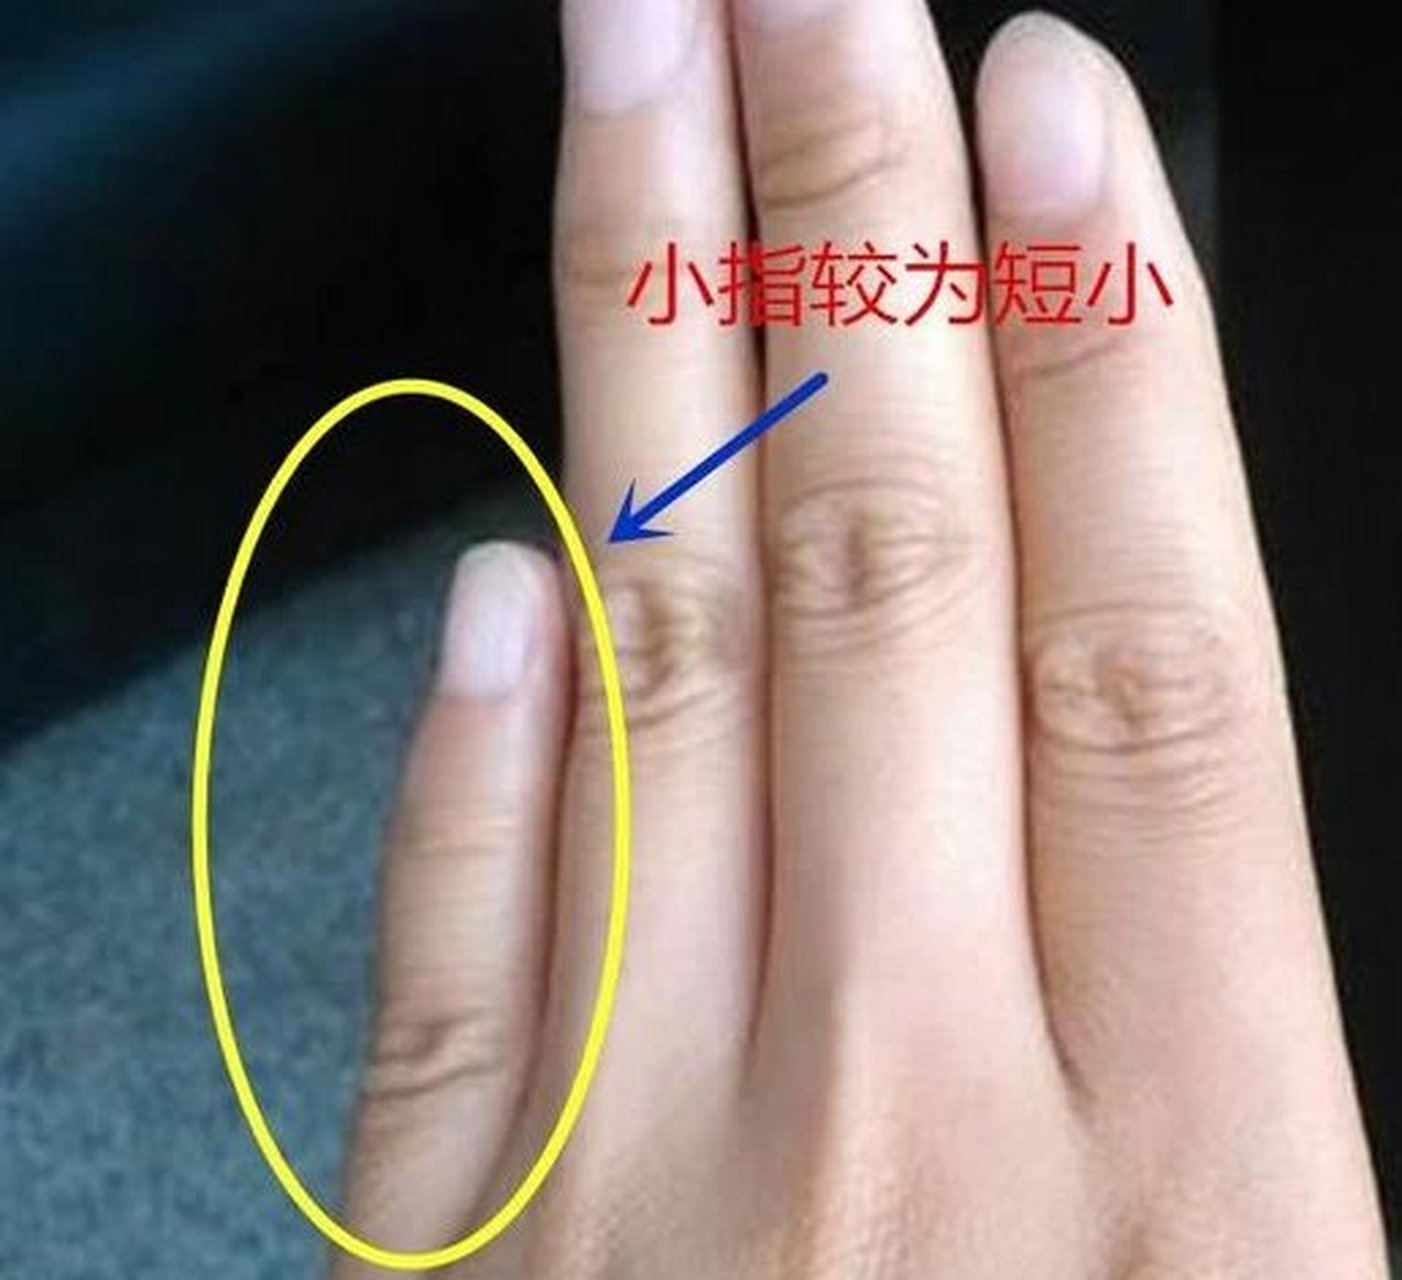 大拇指的第二节出现的橫纹或竖纹称之为财富纹,大姆指第二节与手掌的